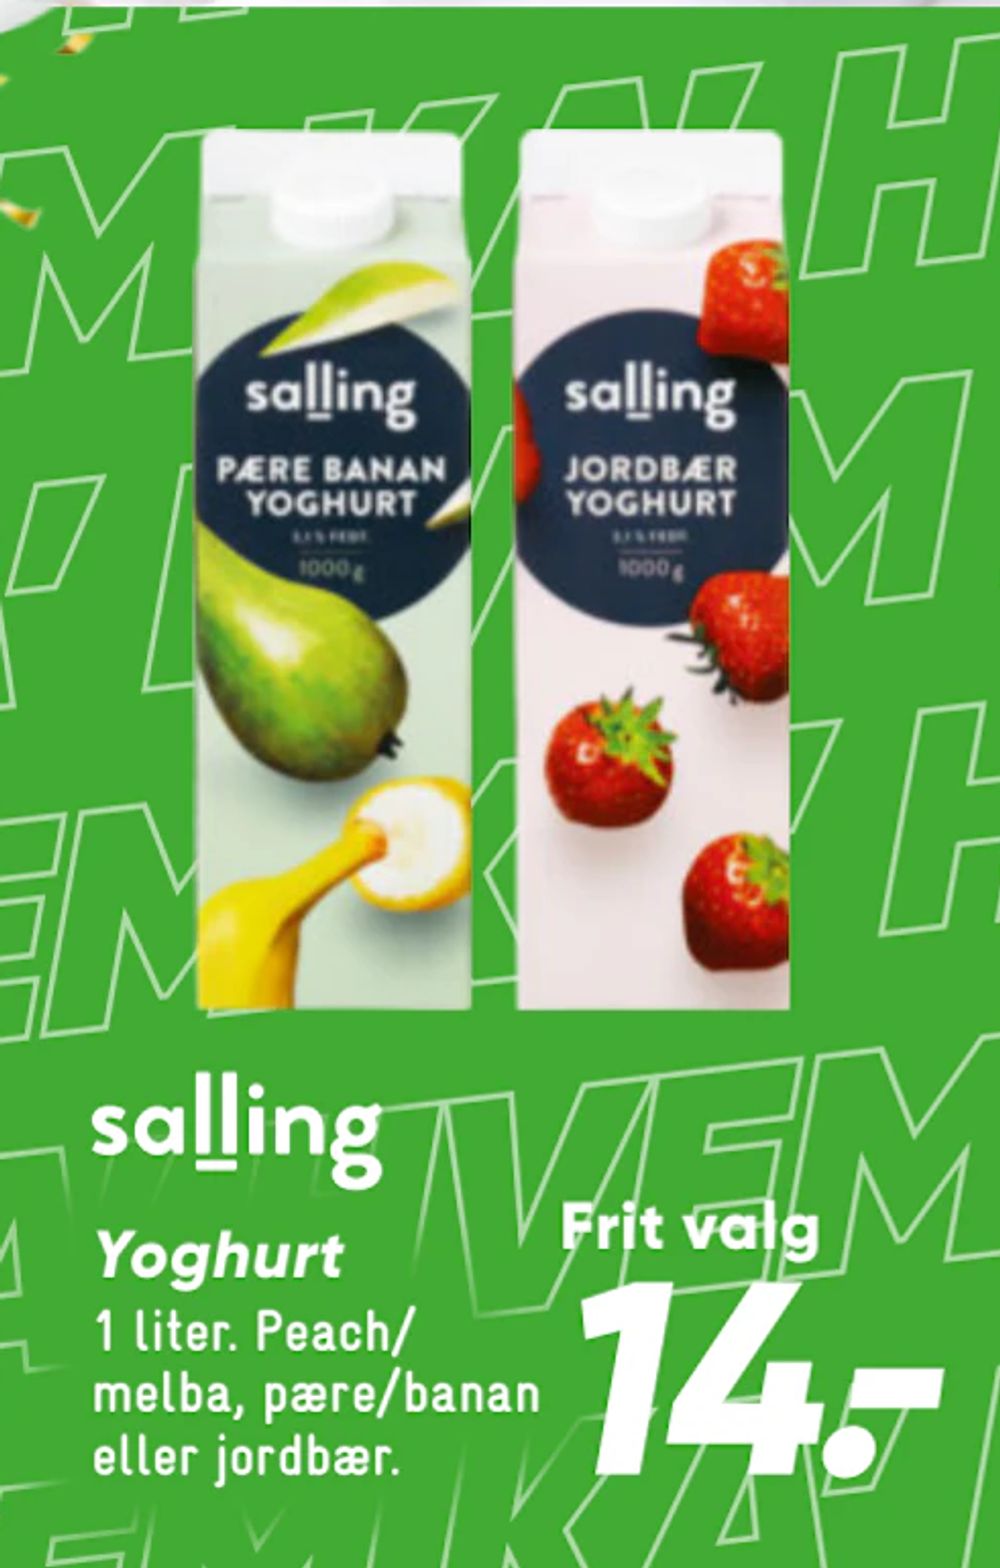 Tilbud på Yoghurt fra Bilka til 14 kr.